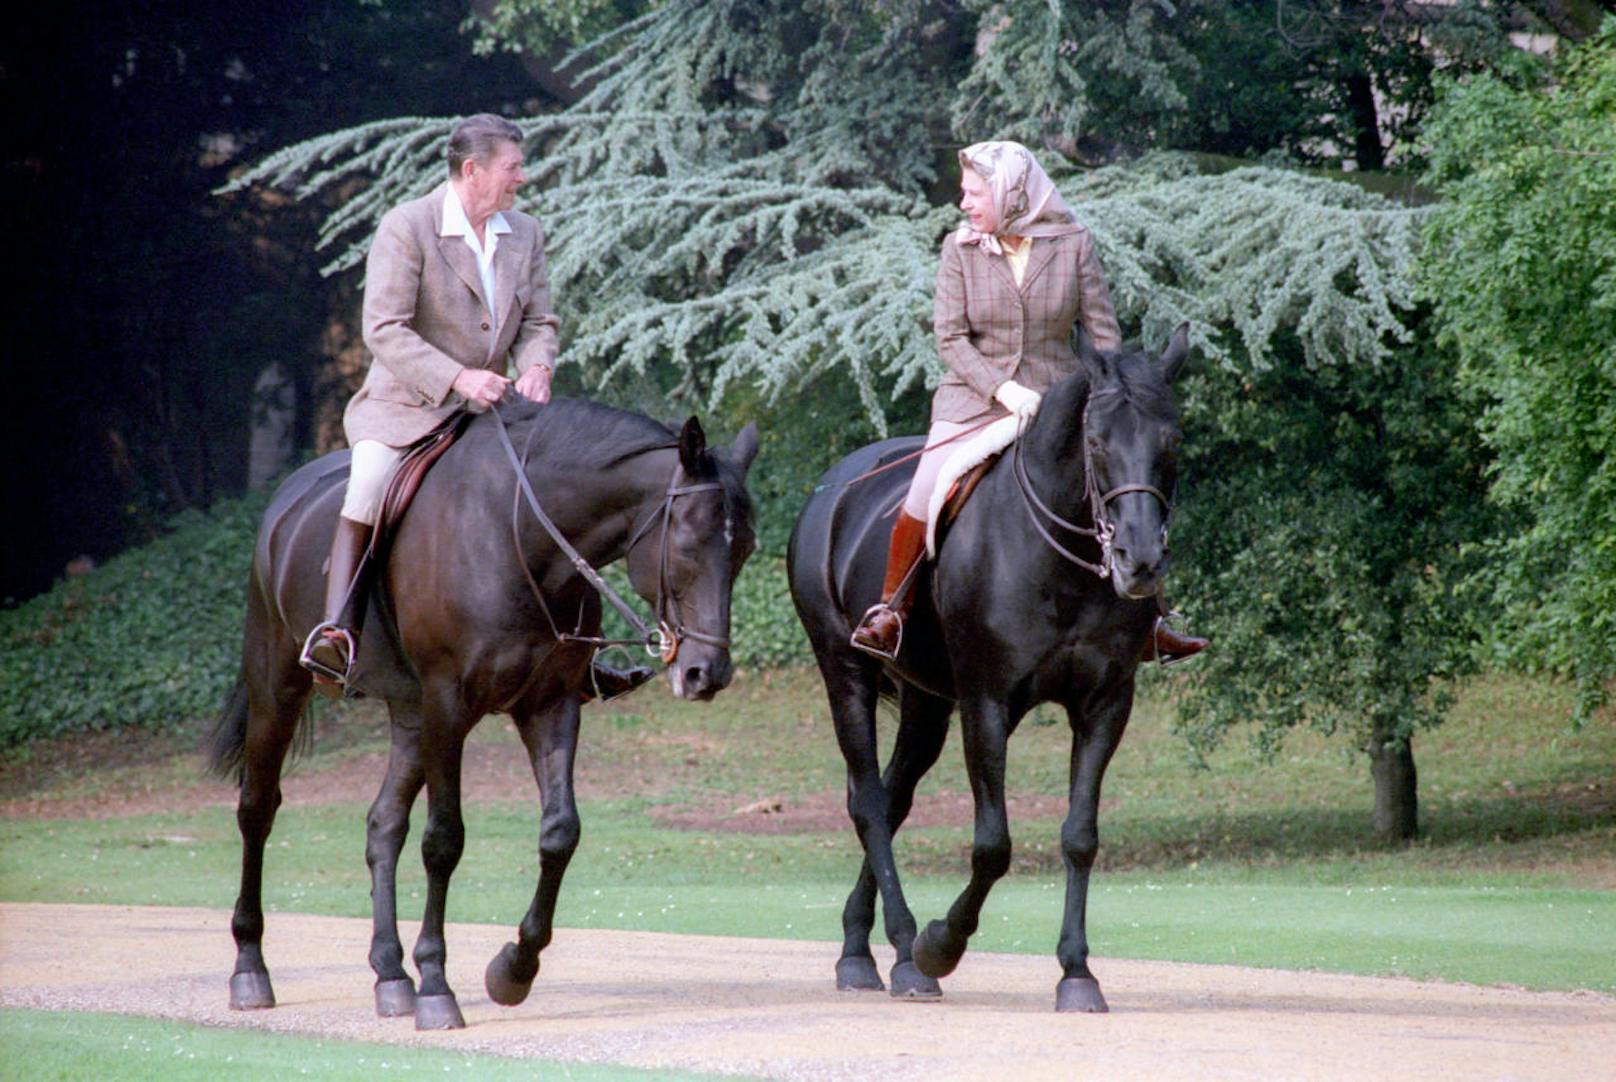 Der inzwischen verstorbene ehemalige US-Präsident Ronald Reagan, der vor seiner Politikerkarriere als Kino-Cowboy Erfolge feierte, fühlte sich zu Pferde sehr wohl. Das verband ihn unter anderem mit der britischen Königin Elisabeth II. (hier im Jahr 1982).